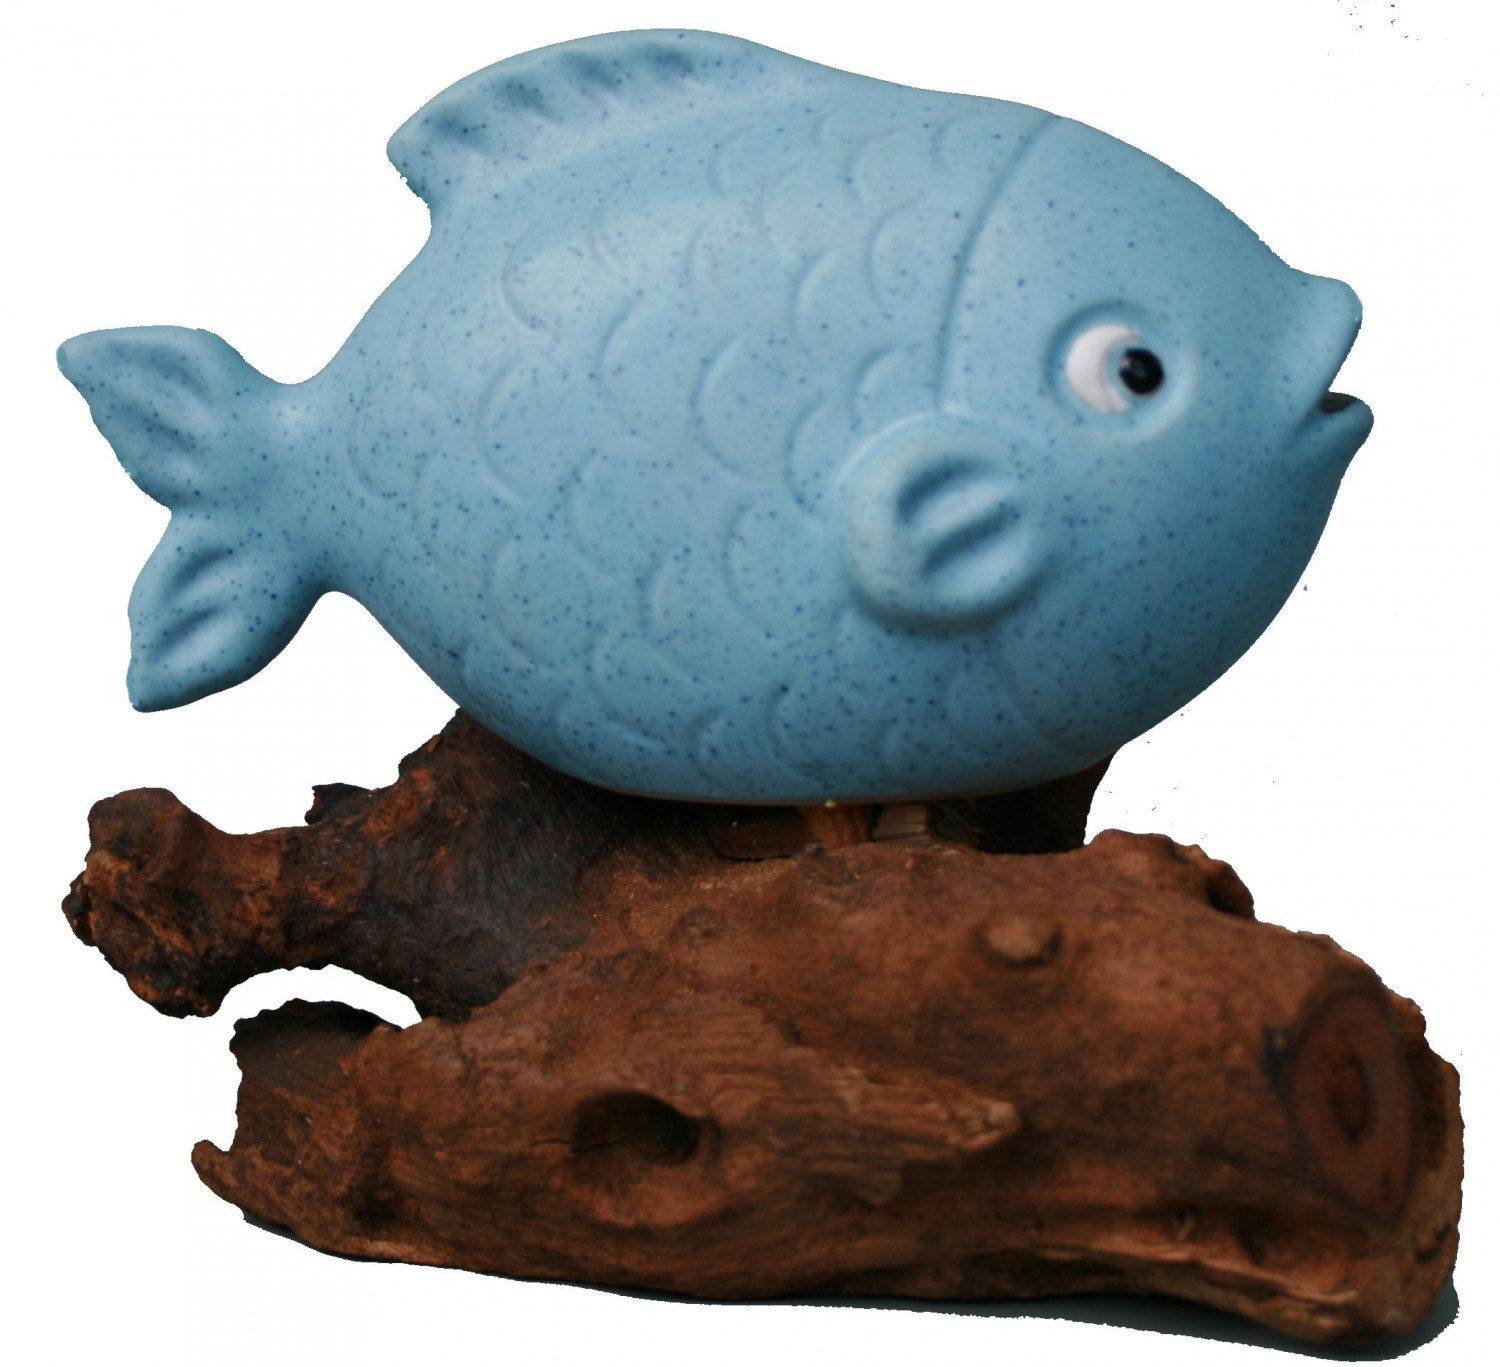 Fisch Keramik (16cm) auf Wurzelholz ca. 16cm